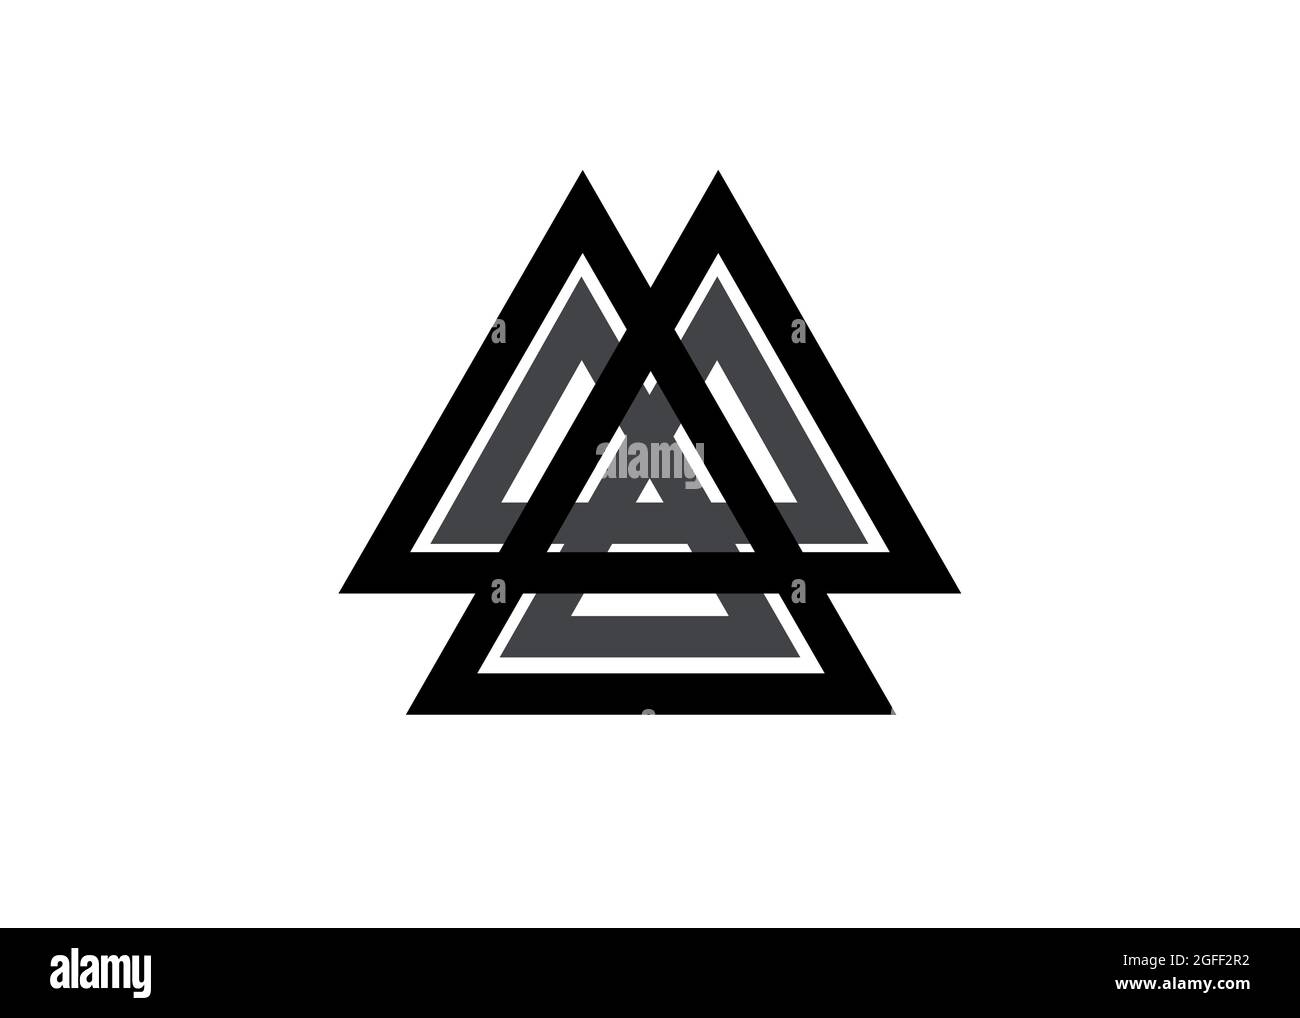 Verflochtene Dreiecke, Valknut, heilige Geometrie. Flaches Symbol. Logo, Tattoo, okkultes Amulett. Esoterische Symbolvektordarstellung isoliert auf Weiß Stock Vektor